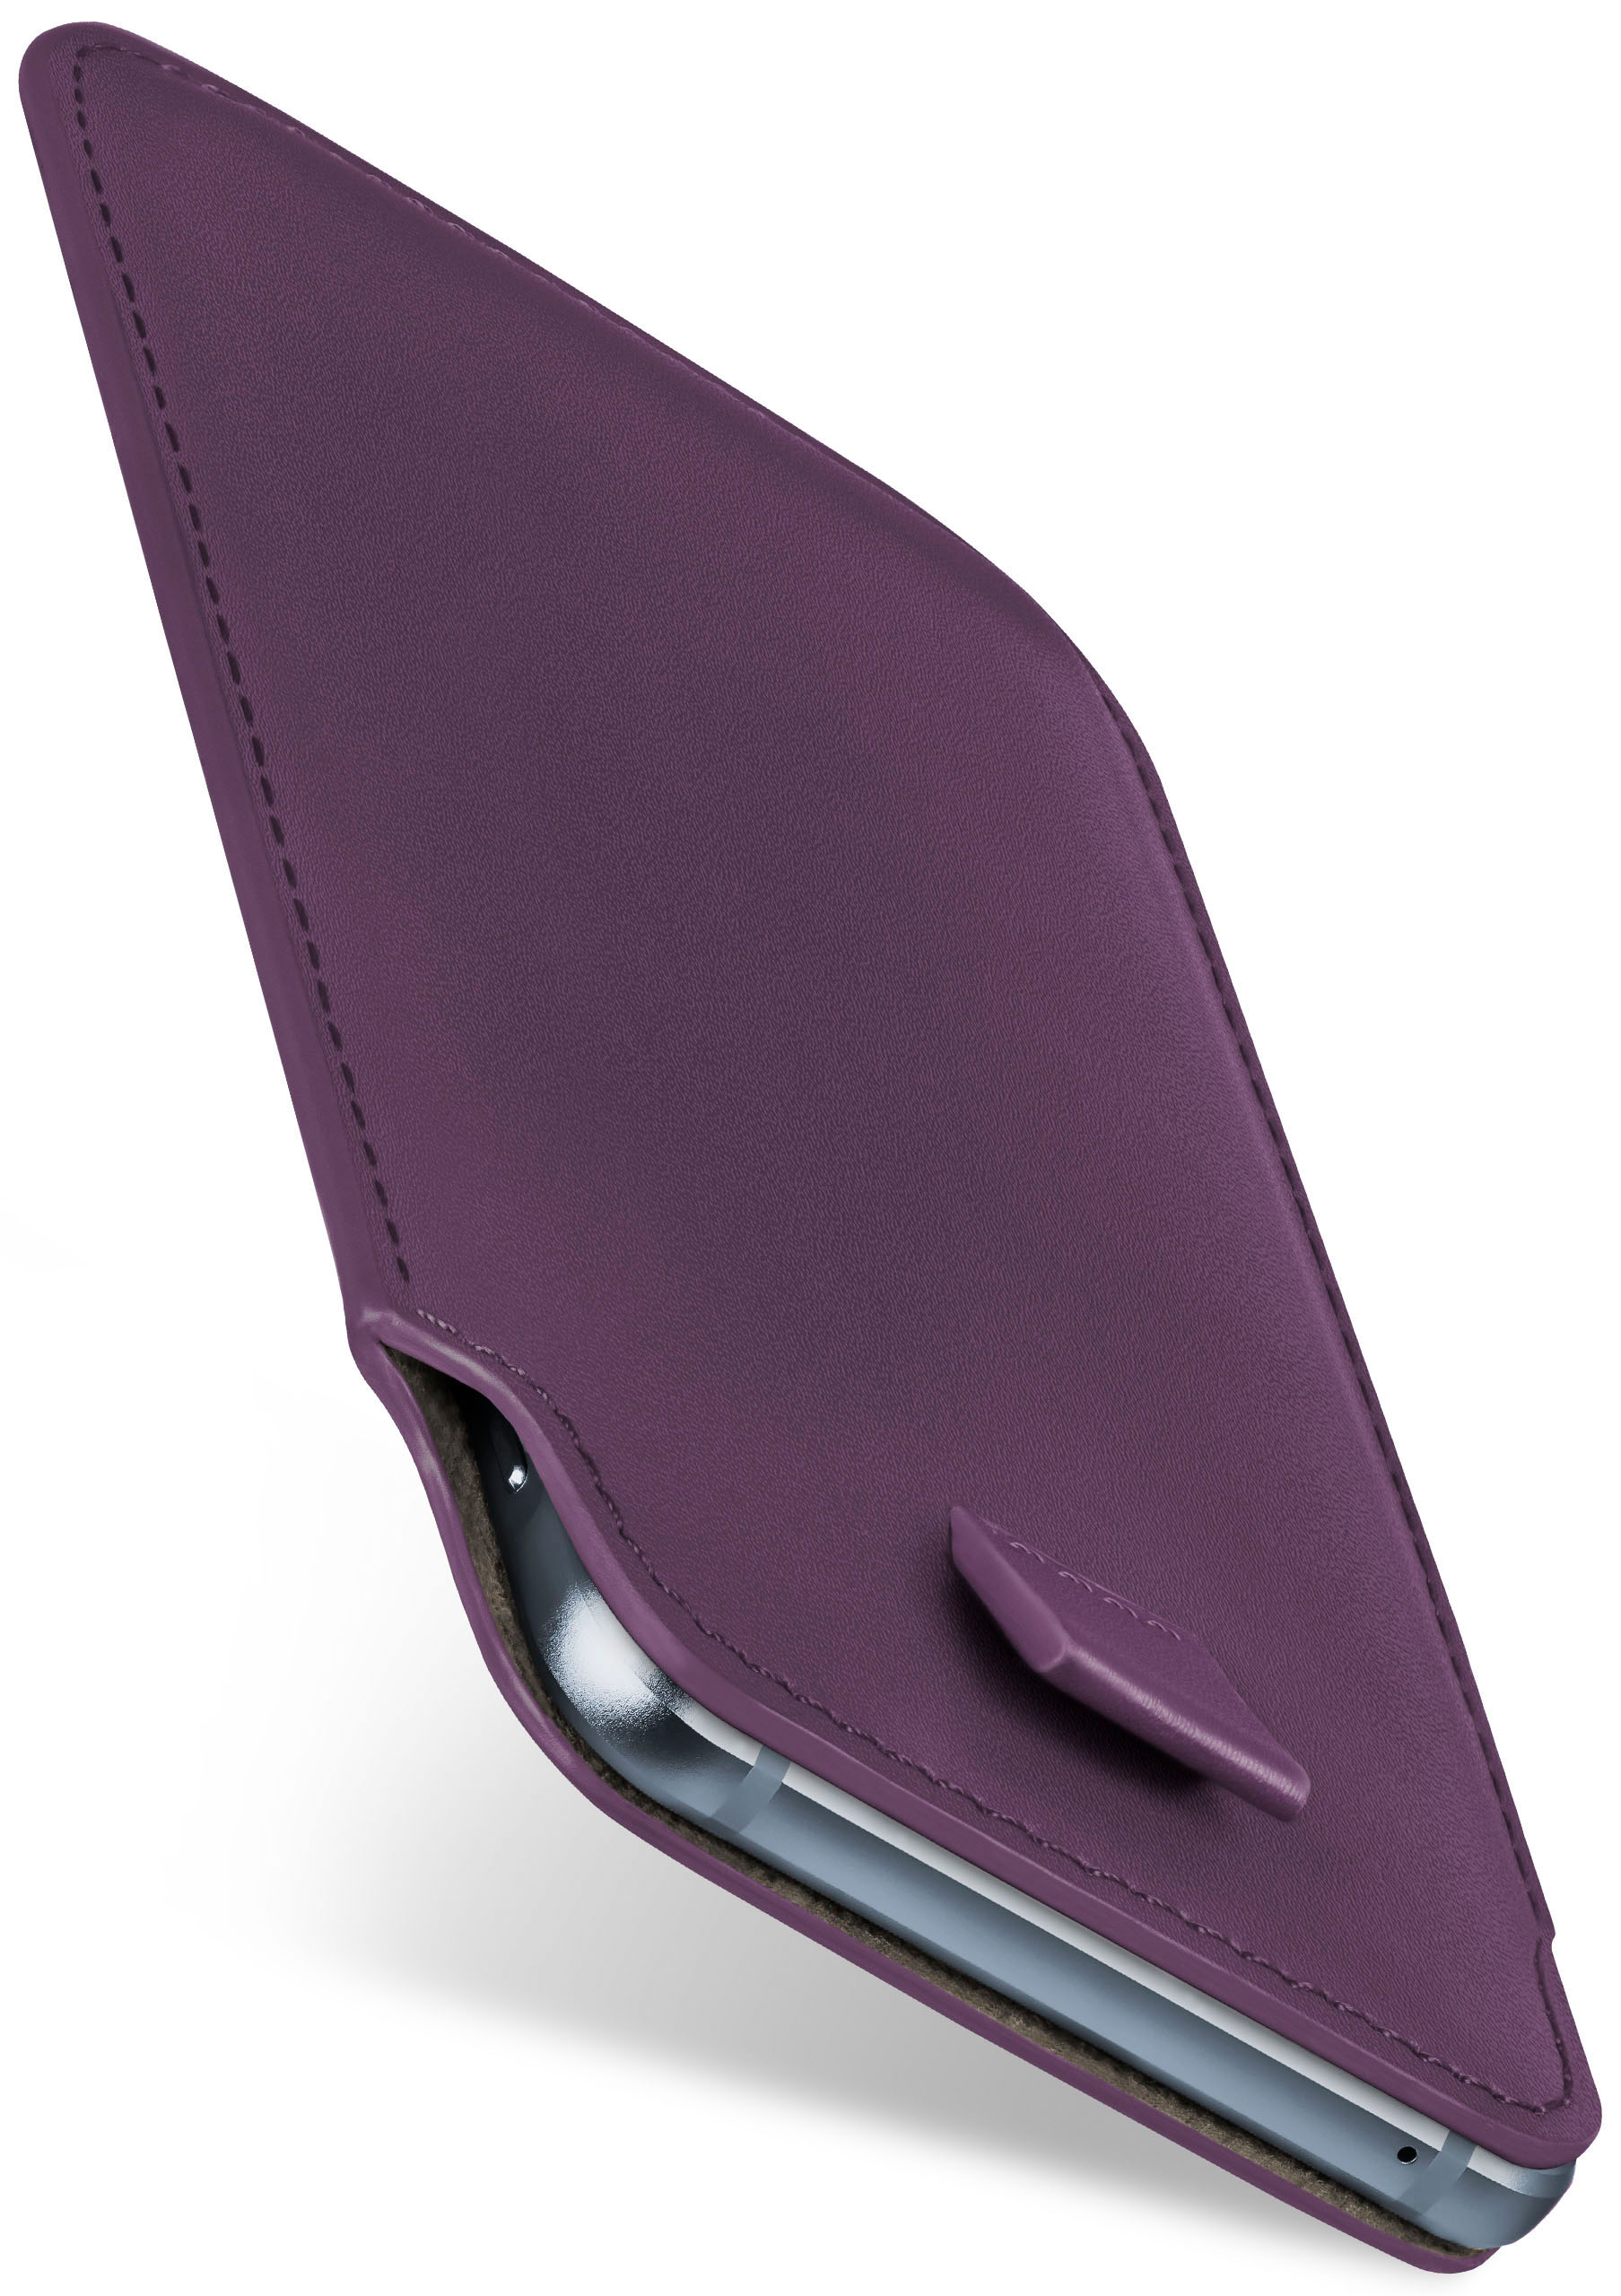 G4 Case, Plus, G4 / Moto Lenovo, Slide Full Indigo-Violet Cover, MOEX